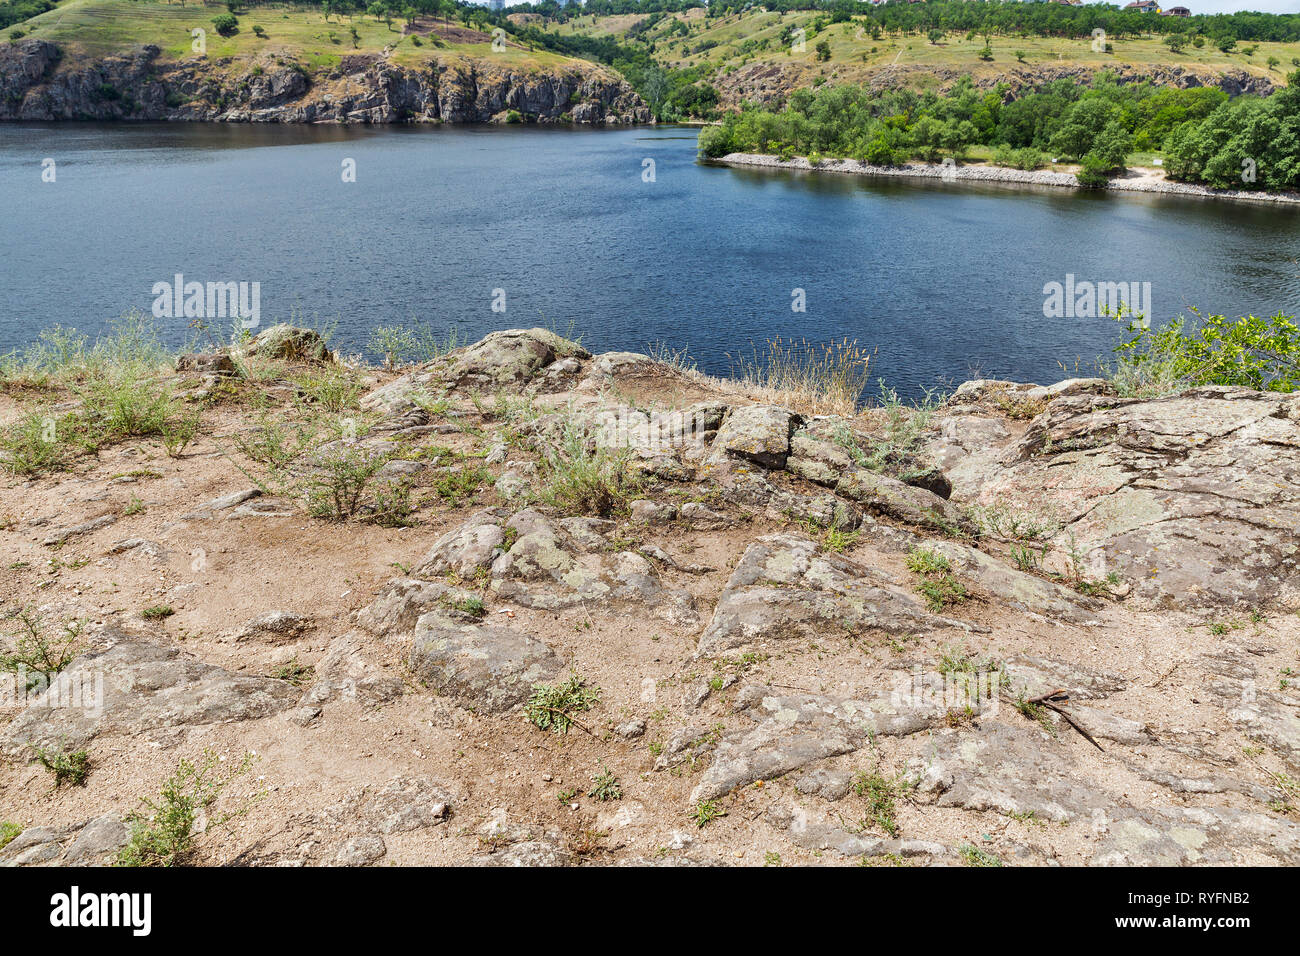 Paesaggio con Khortytsia, la più grande isola del fiume Dniepr, Ucraina. Foto Stock